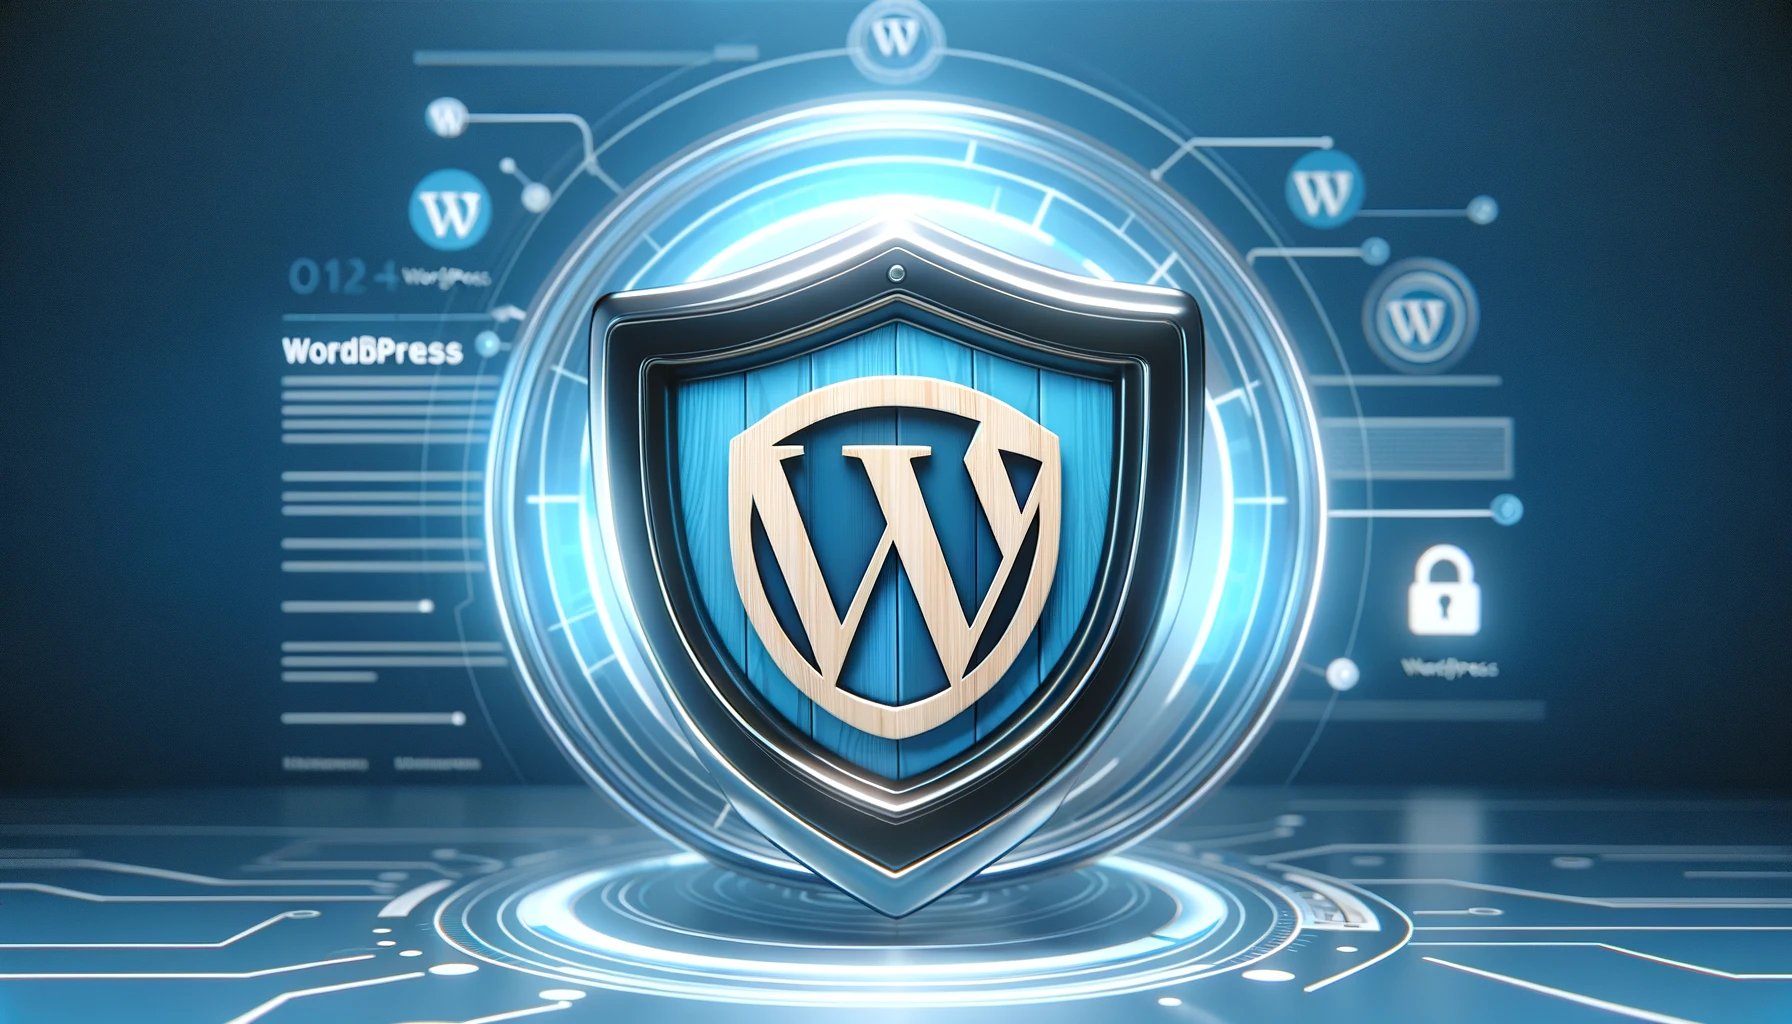 Escudo de seguridad para WordPress integrado con el logo de WordPress, simbolizando protección y confianza.